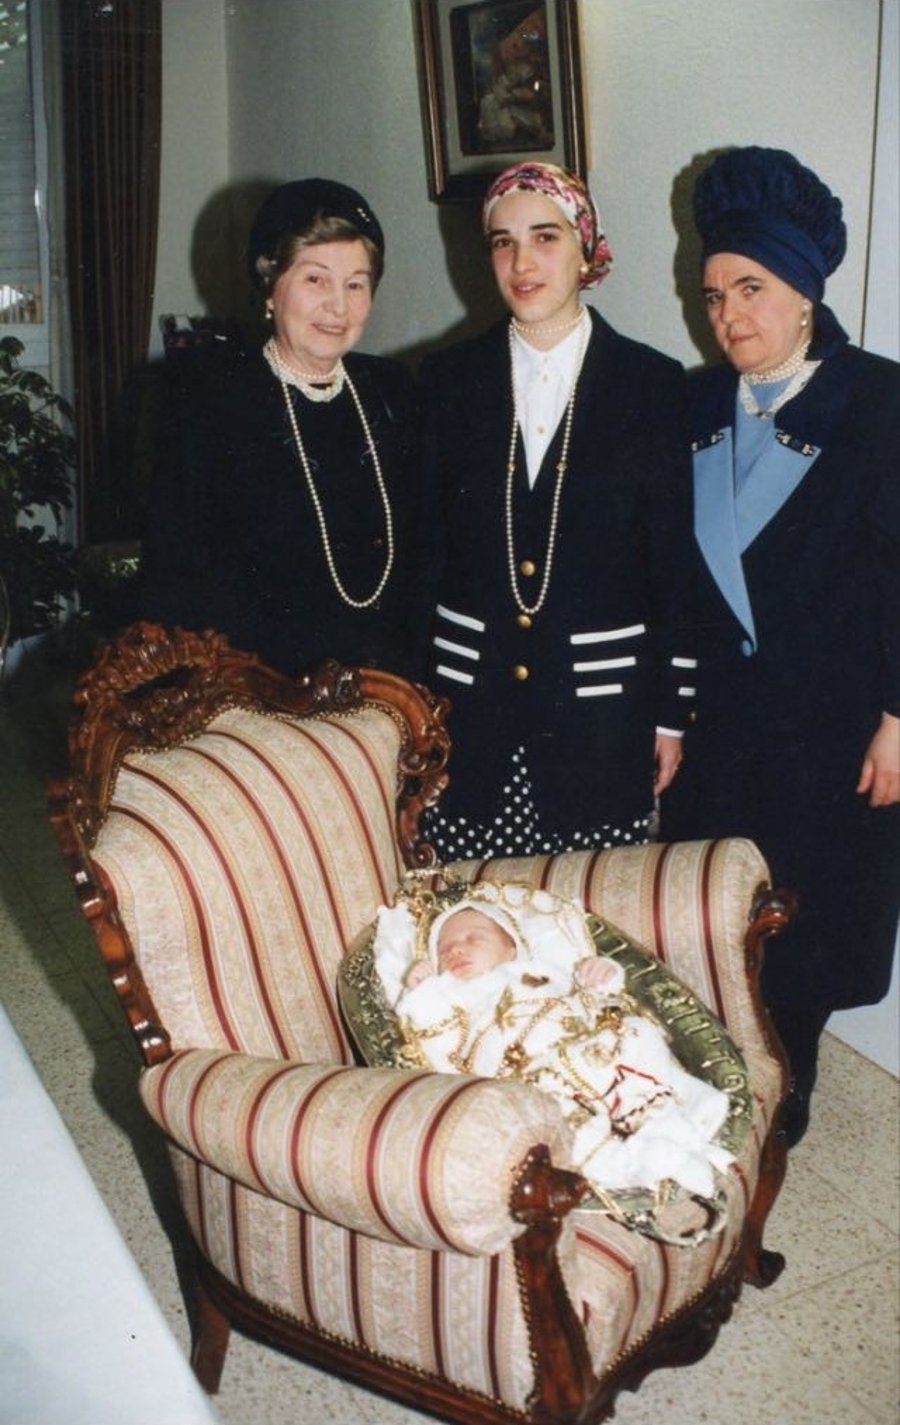 נשיא המדינה לרבי מבעלזא על אמו הרבנית ע"ה: "היא זכתה בחייה"